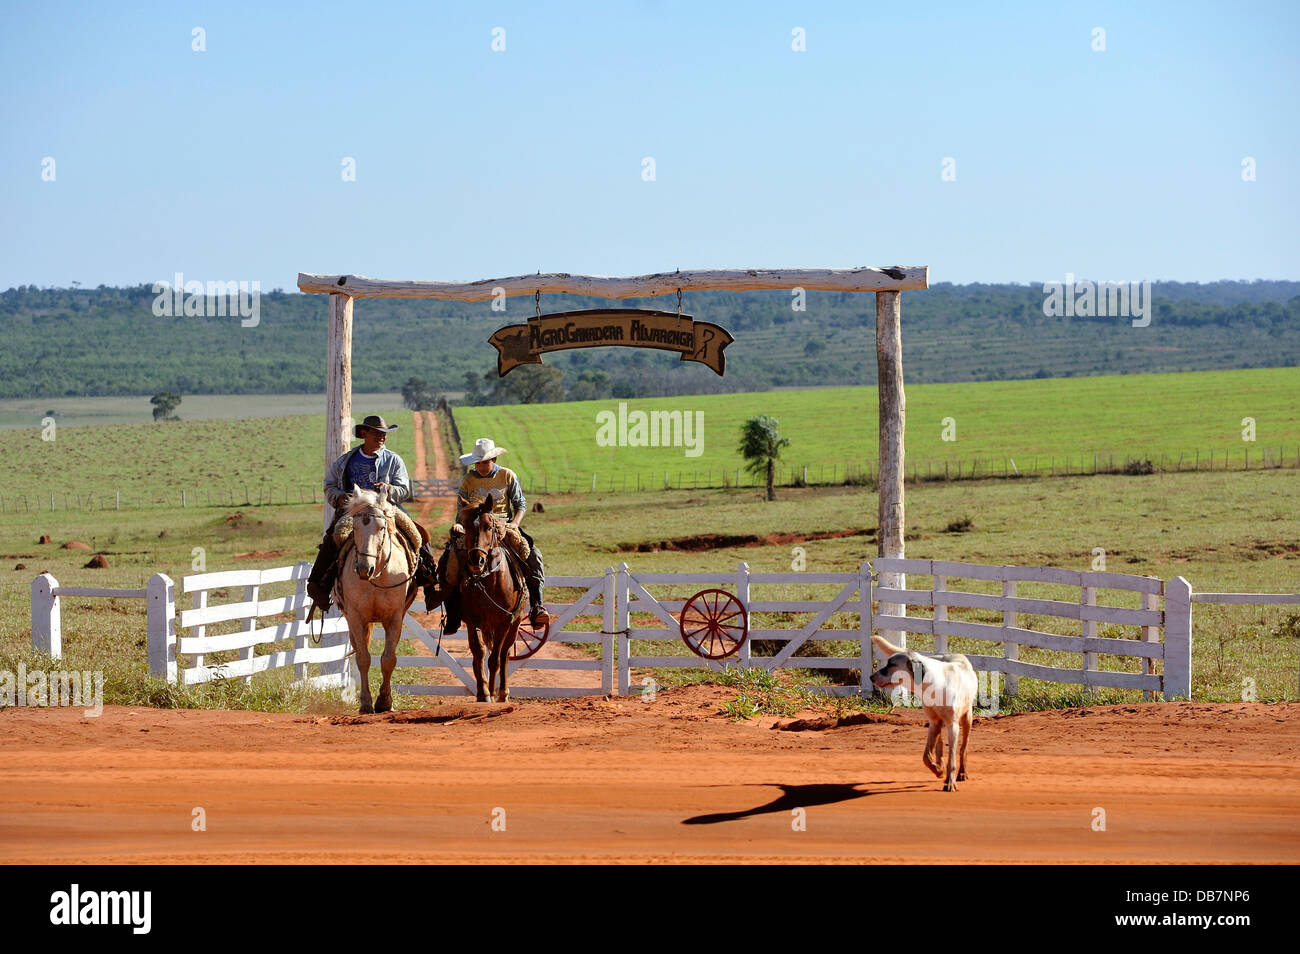 Two men riding horses, cowboys, entrance of a fazenda or ranch of a landowner Stock Photo